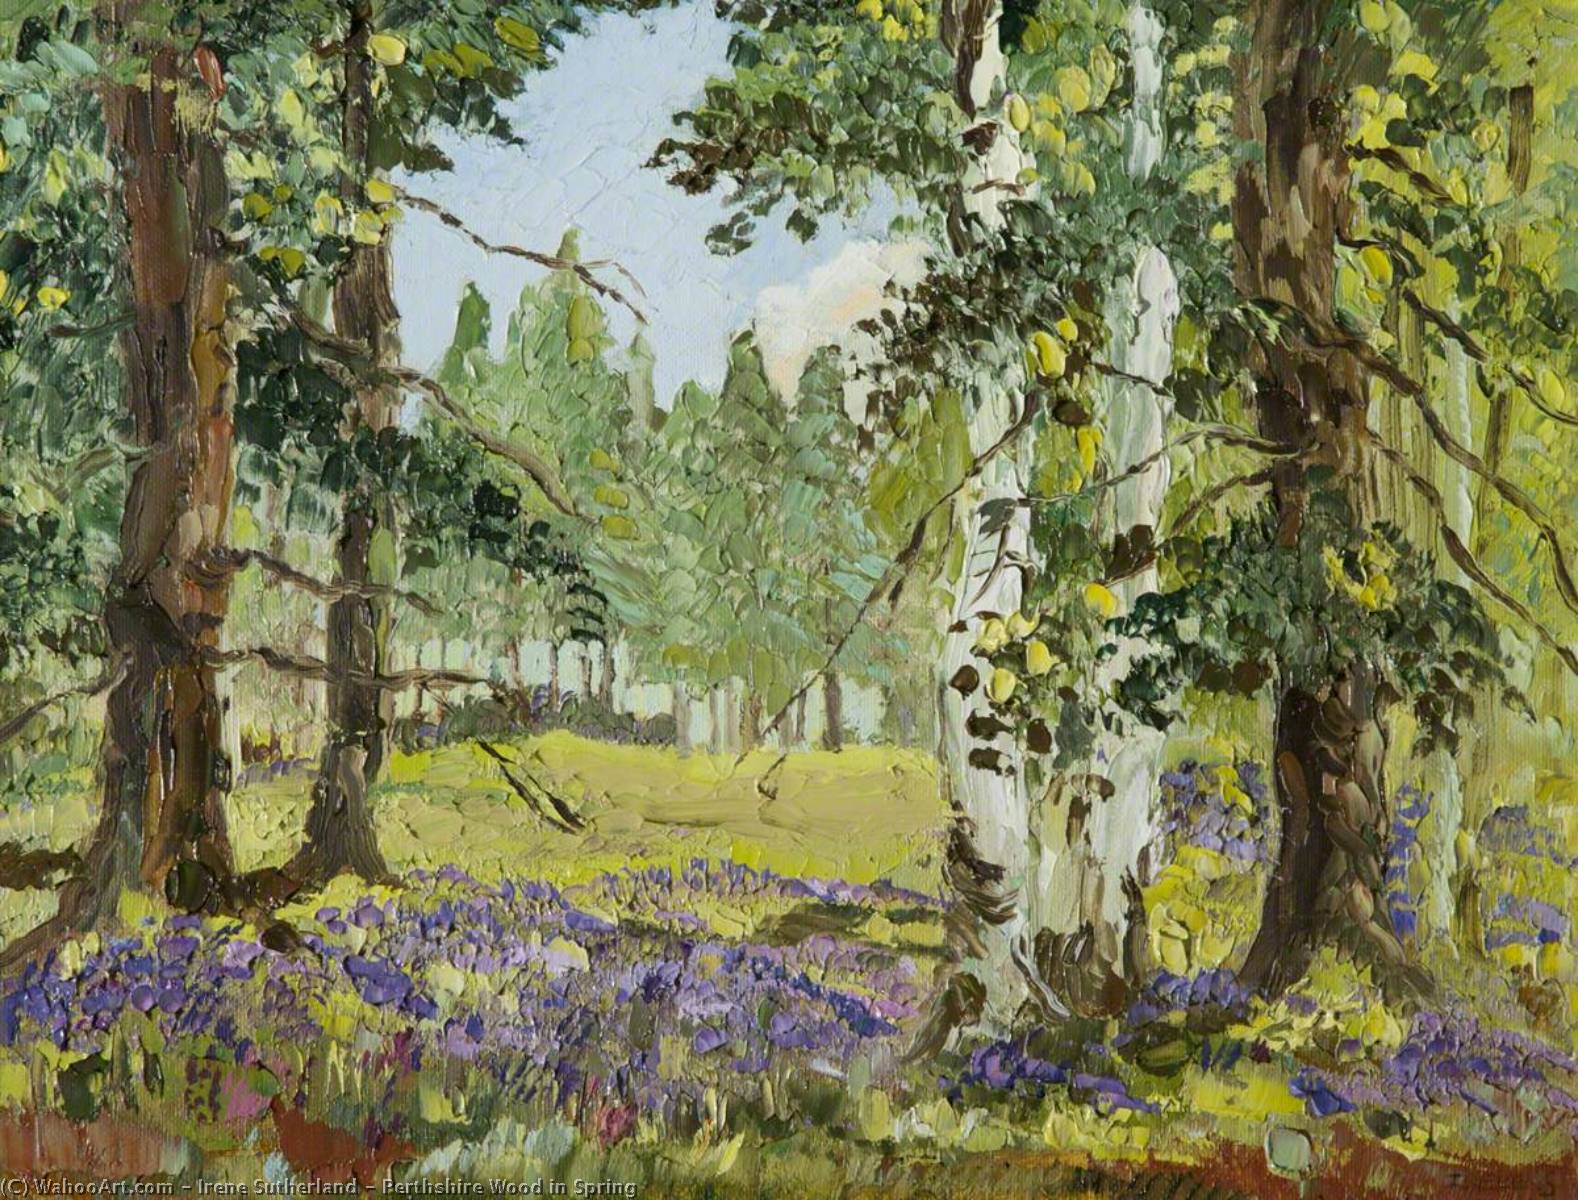 Perthshire Wood in Spring by Irene Sutherland Irene Sutherland | ArtsDot.com